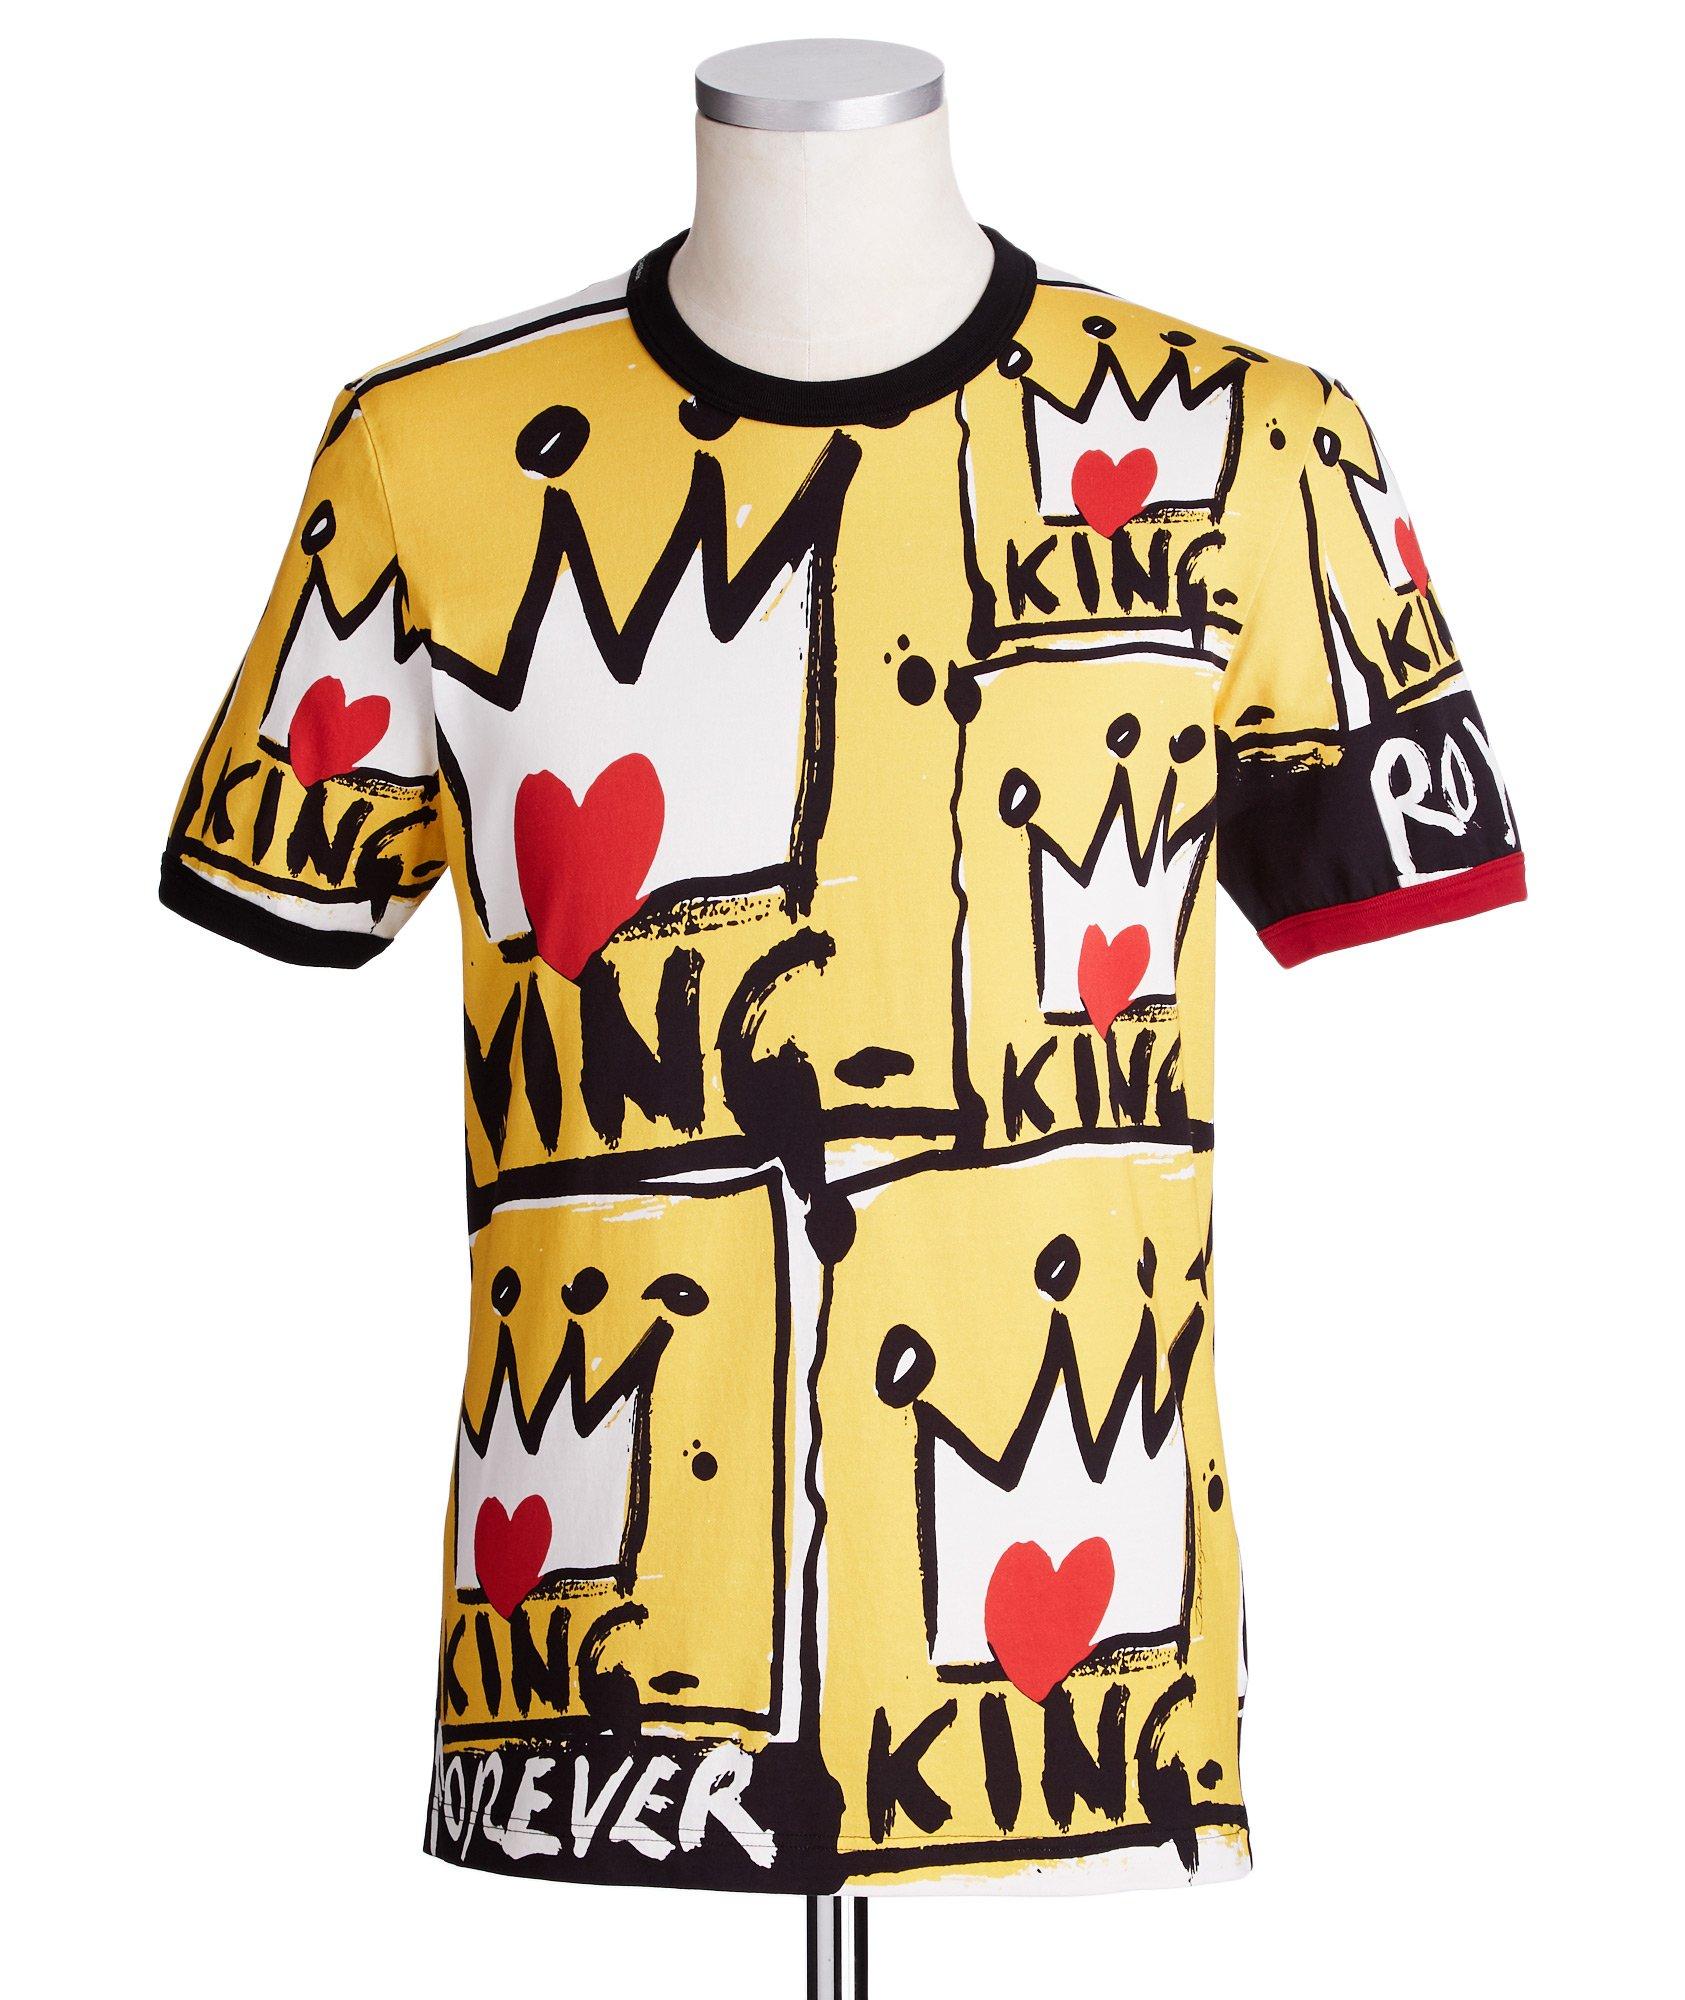 T-shirt king image 0